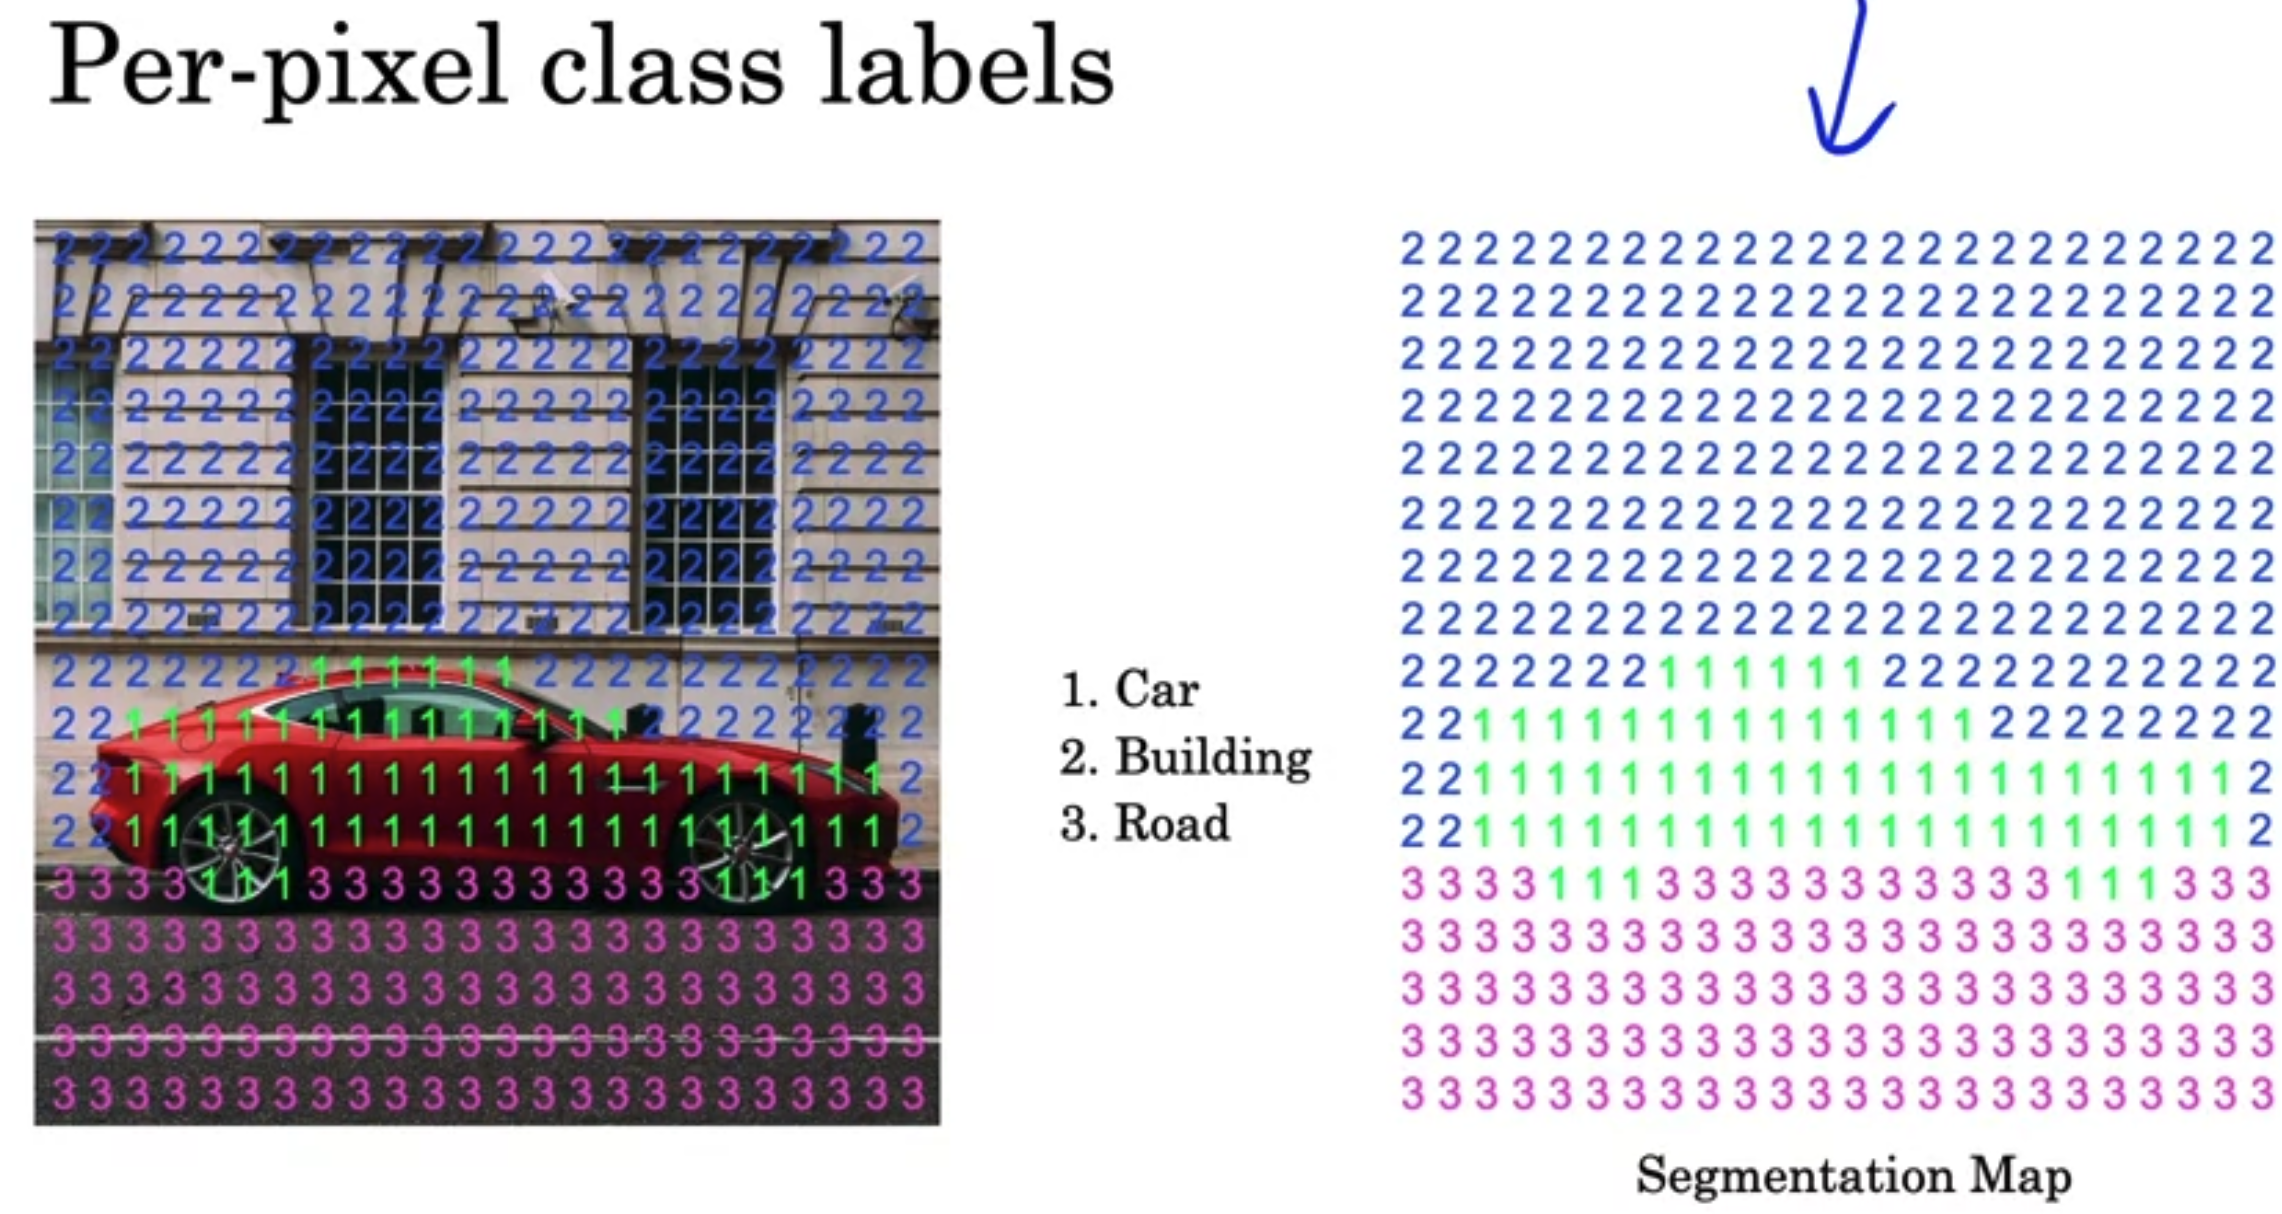 Per-pixel class labels